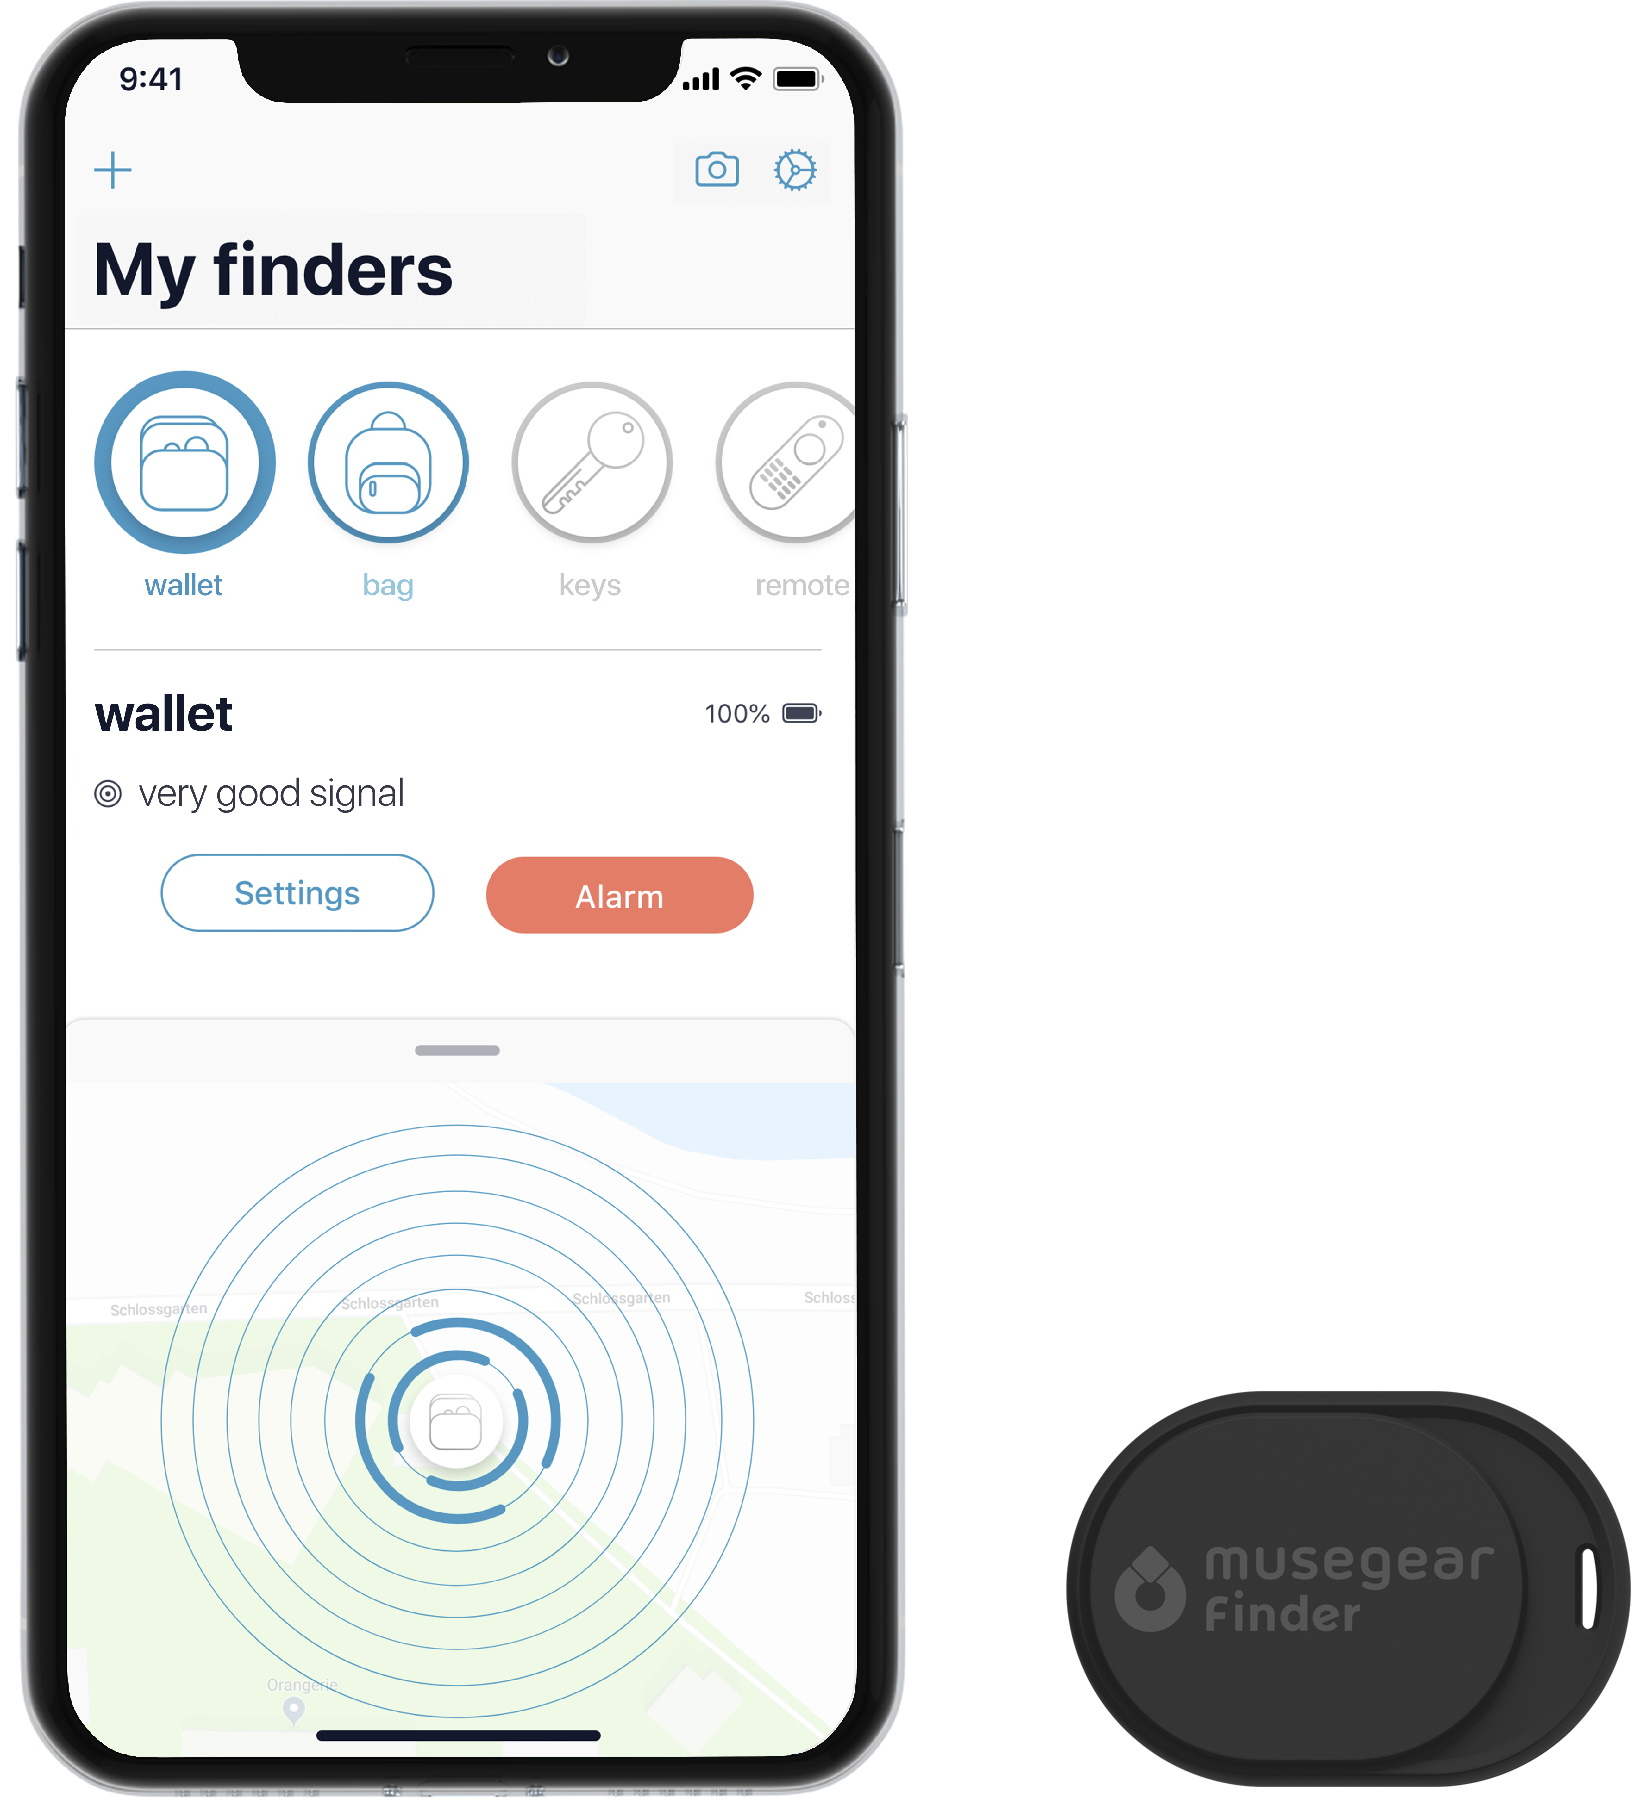 Schlüsselfinder mit Bluetooth Schlüsselfinder Deutschland Bluetooth App aus MUSEGEAR